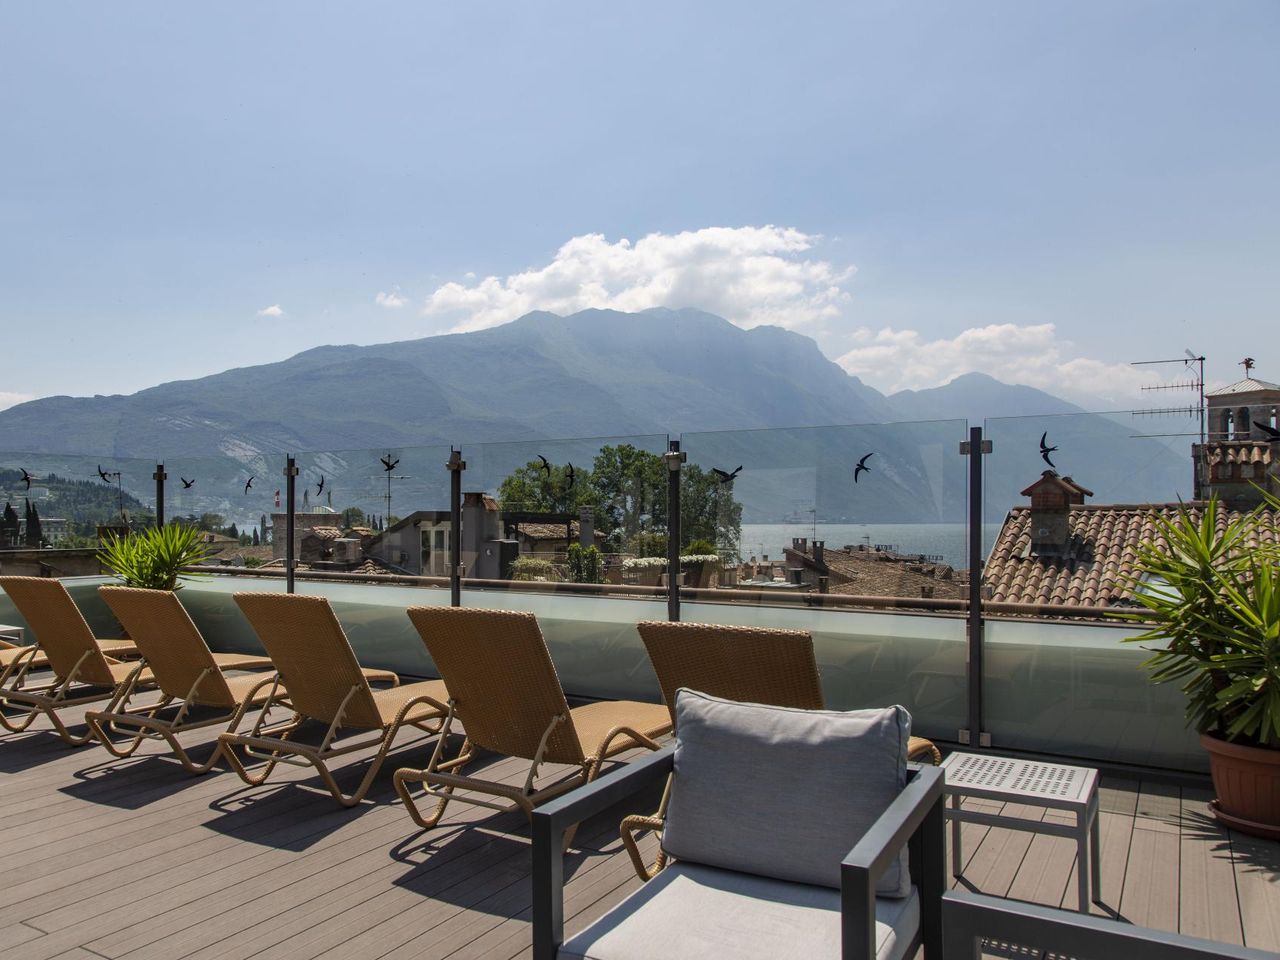 Auszeit am See - 6 Tage in Riva del Garda